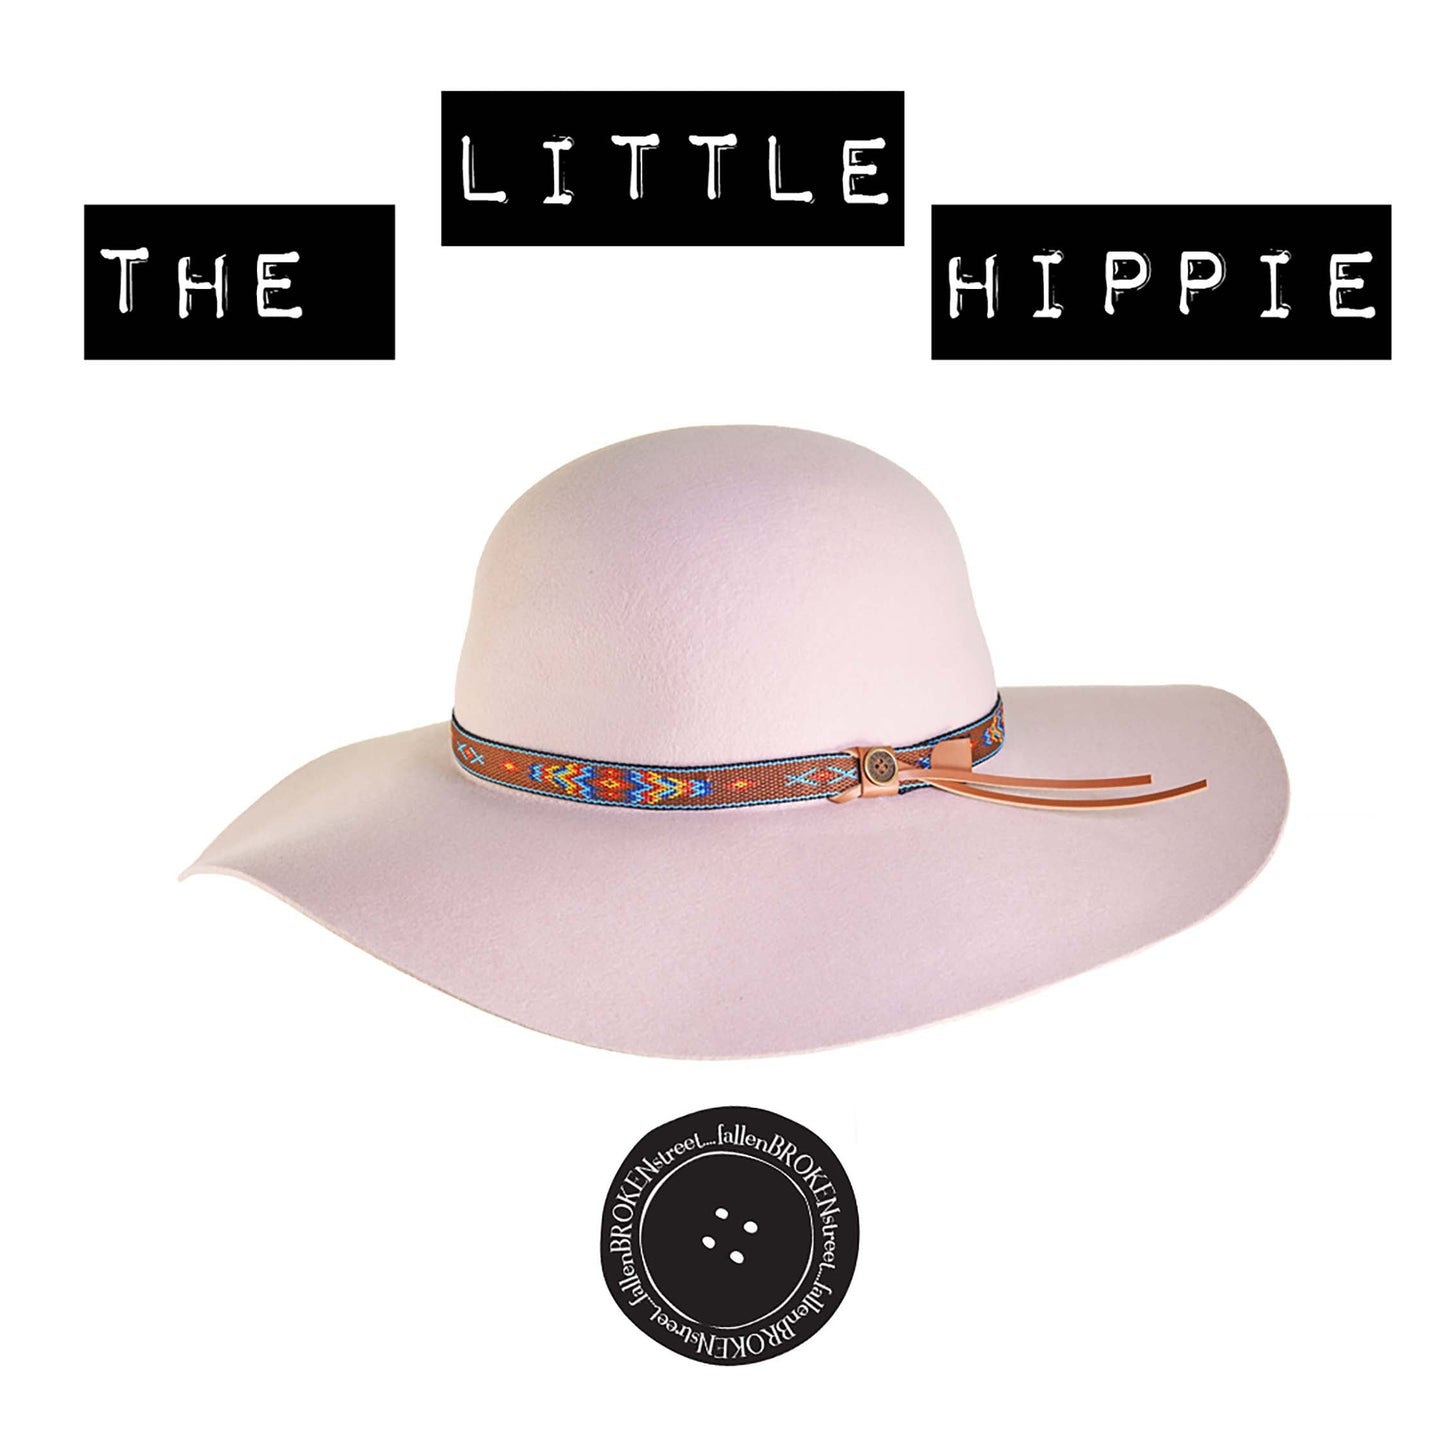 The Little Hippie Floppy Felt Hat - Cream